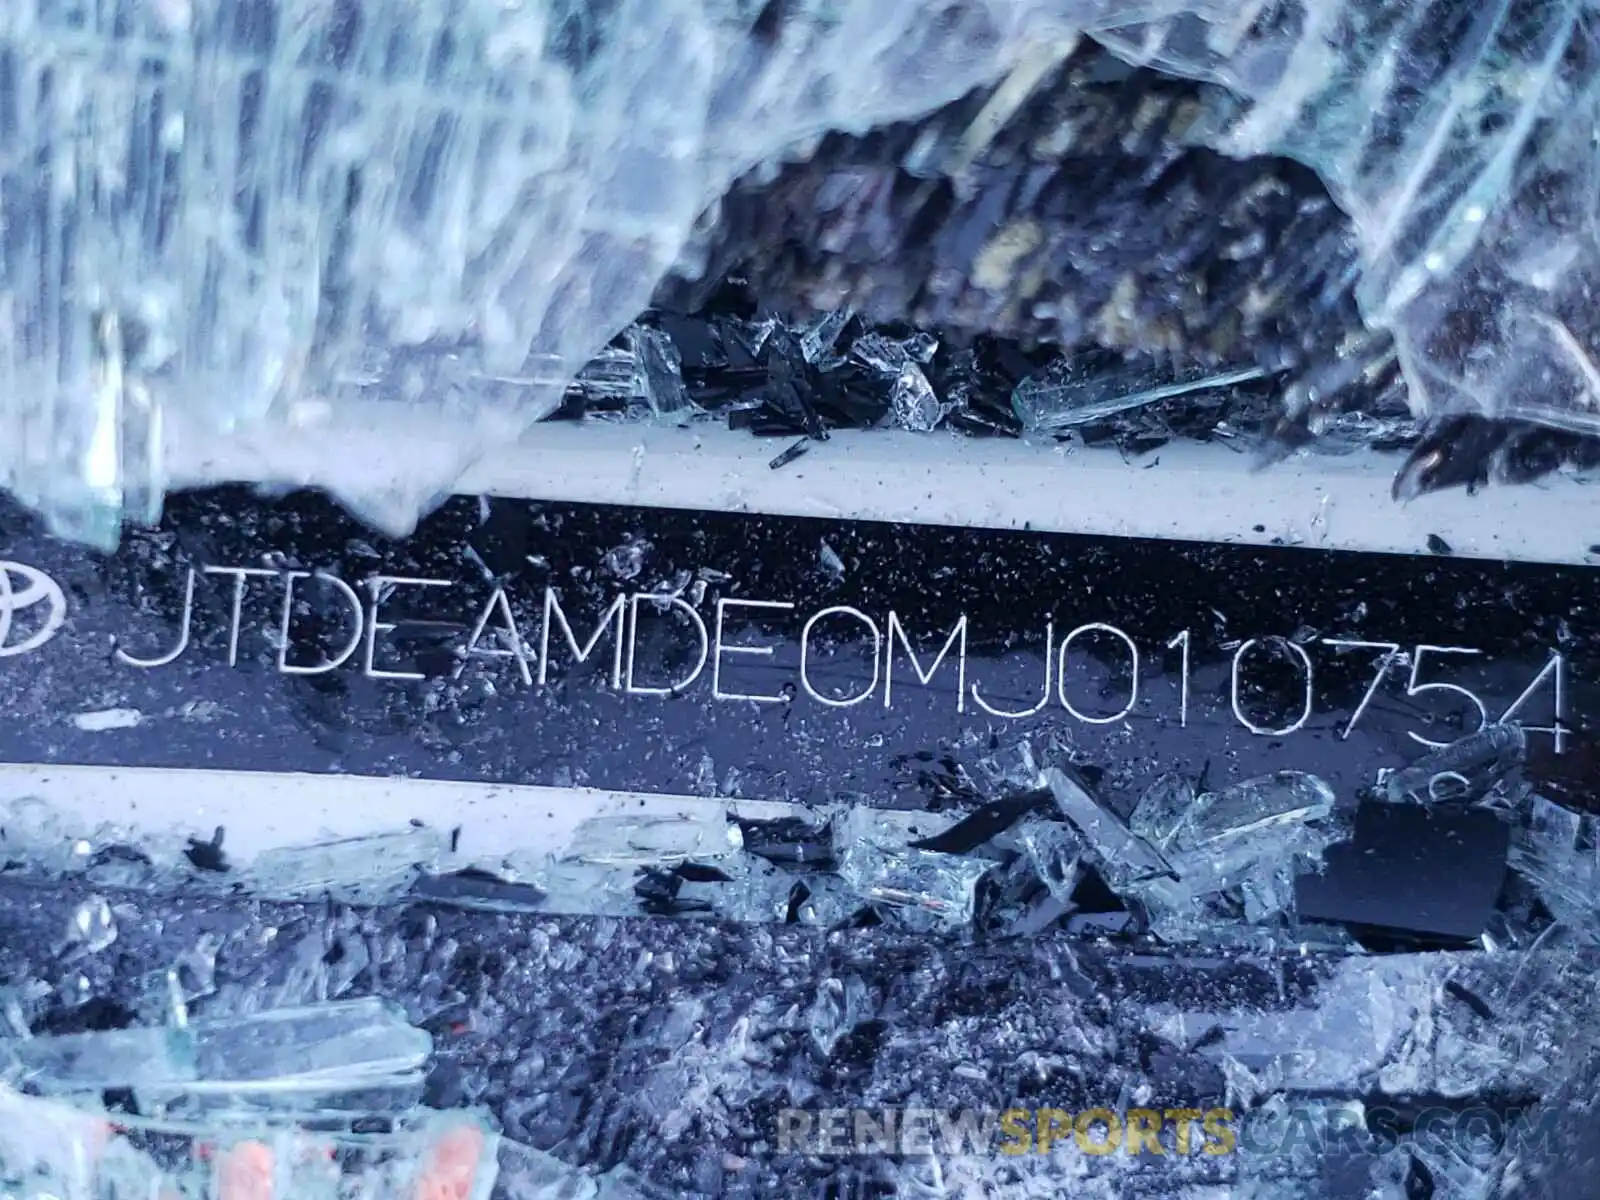 10 Photograph of a damaged car JTDEAMDE0MJ010754 TOYOTA COROLLA 2021